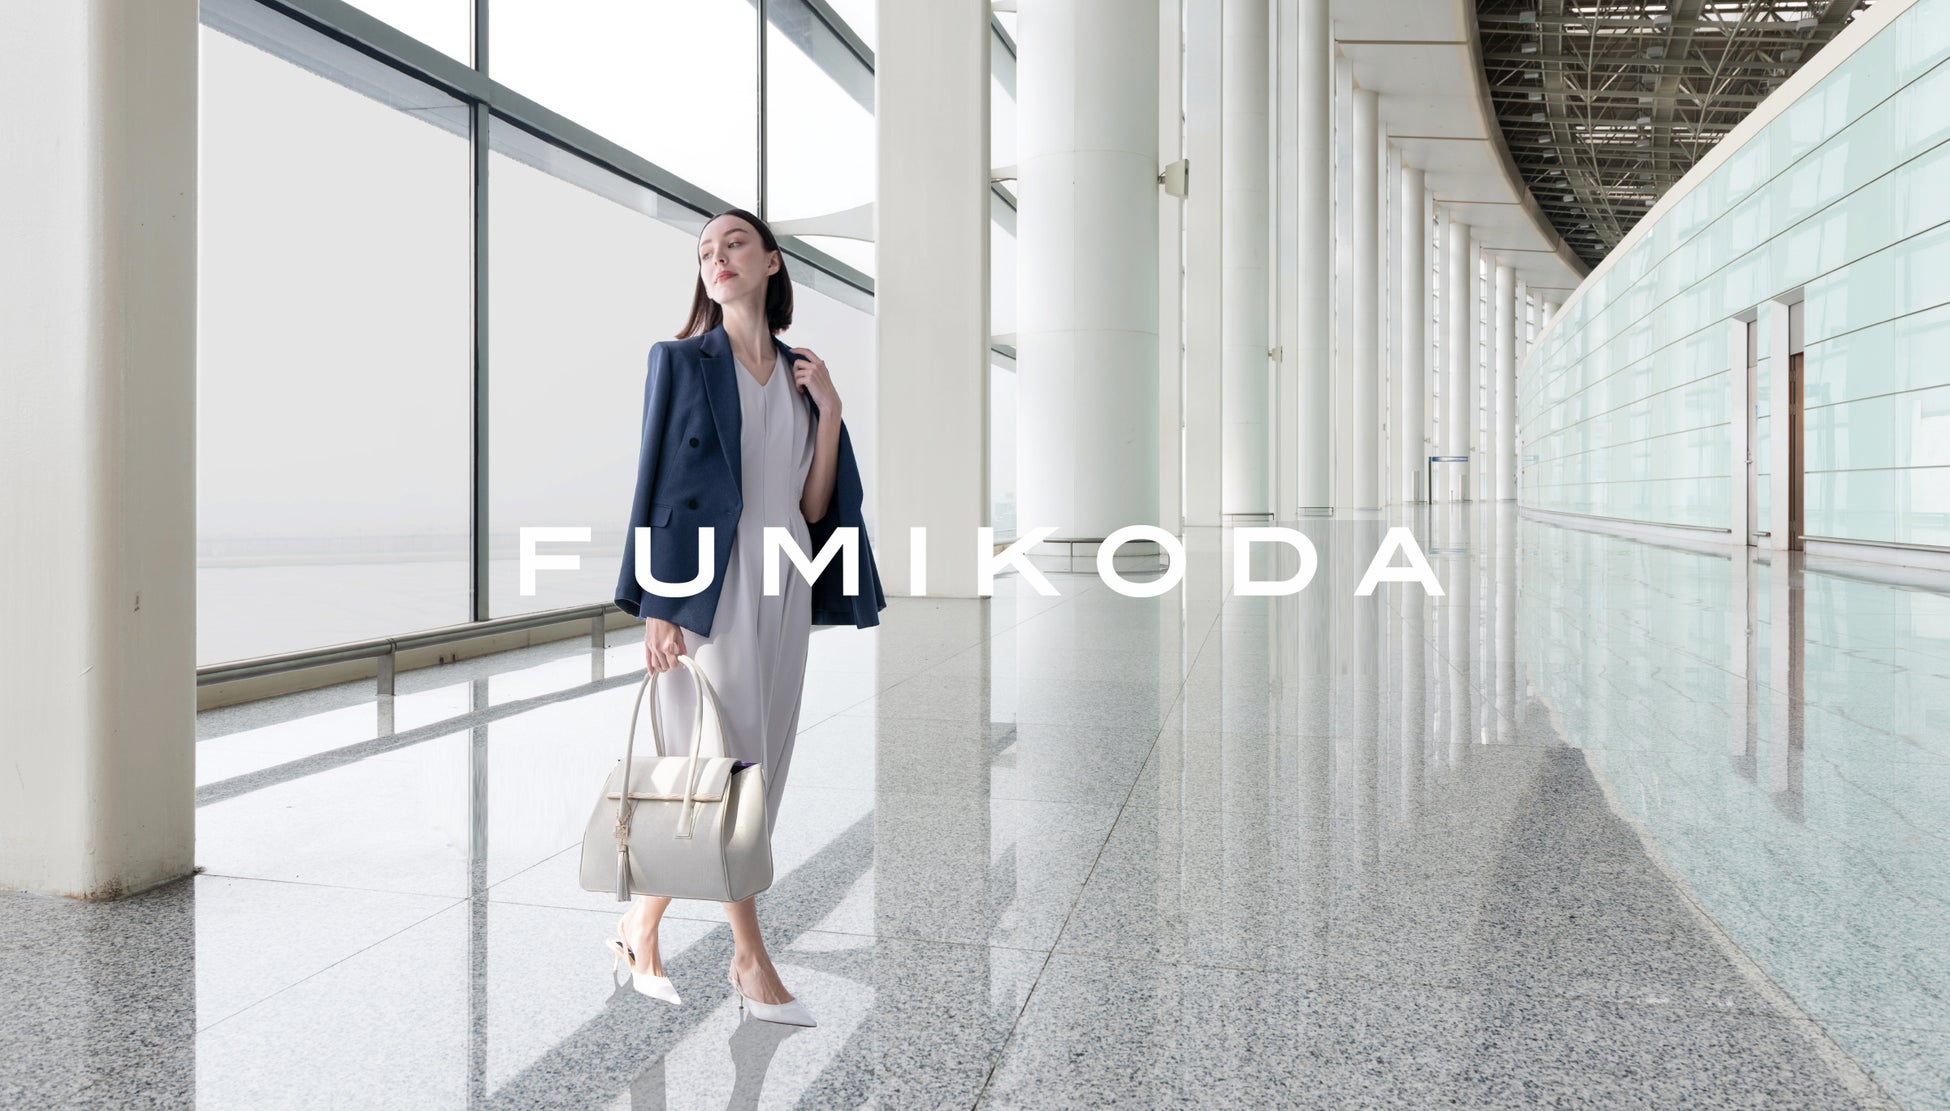 ビジネスバッグブランド「FUMIKODA」が羽田空港第1ターミナルにて取り扱い開始のサブ画像1